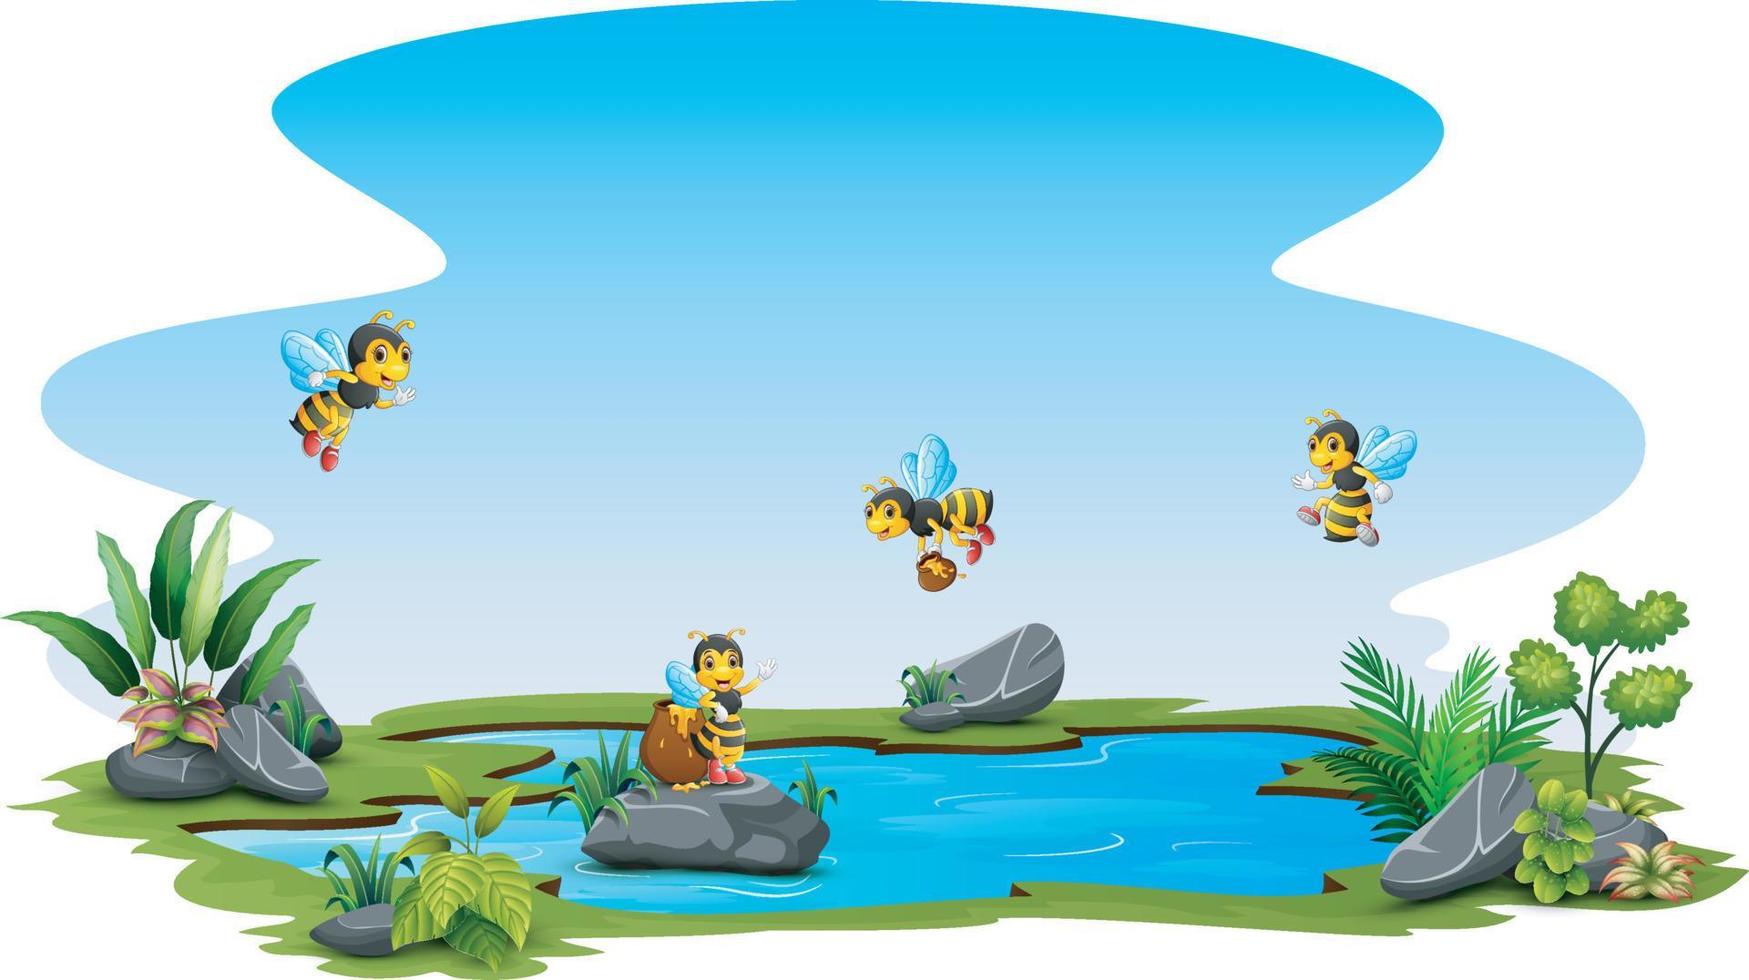 groupe d'abeilles volant au-dessus d'une petite piscine vecteur